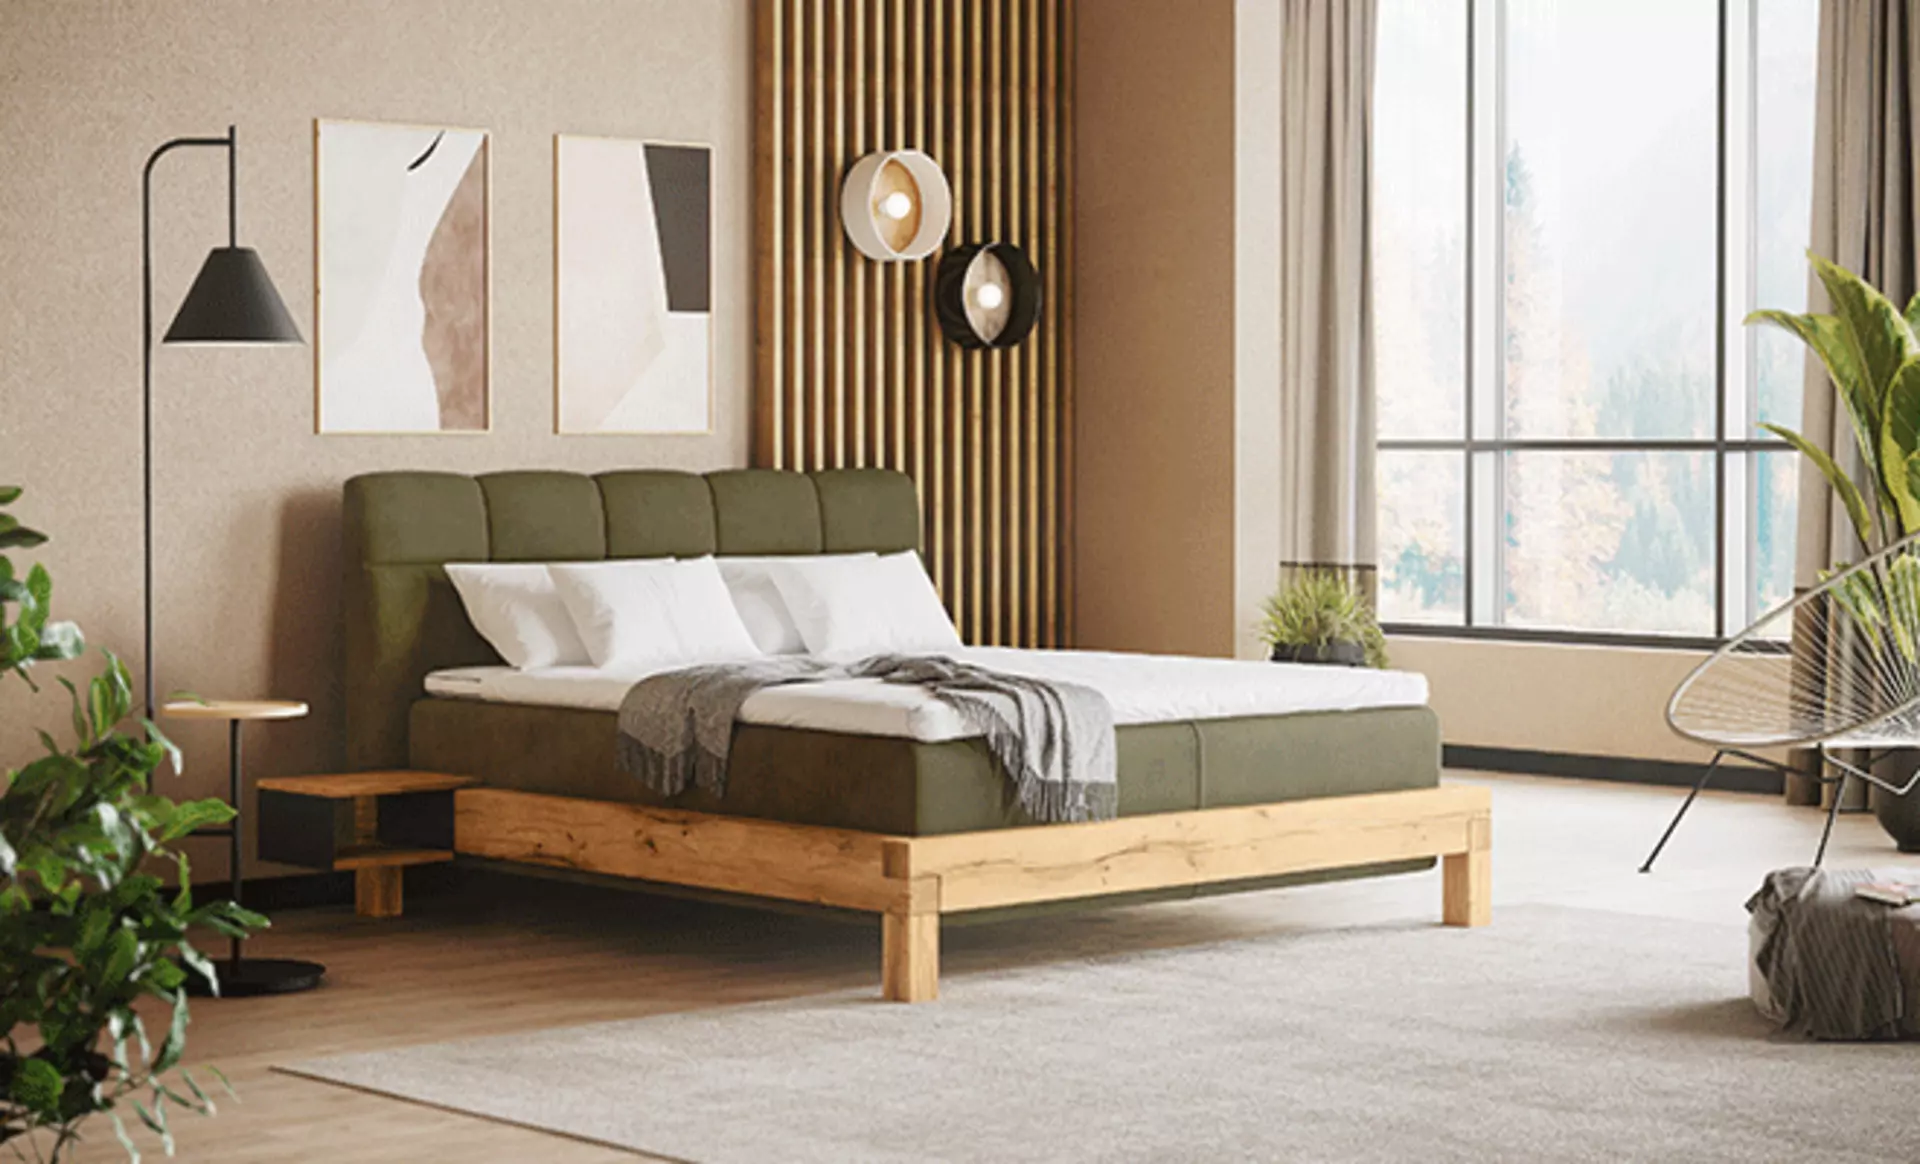 Royal Green im Schlafzimmer - besonders edel mit grünem Polsterbett